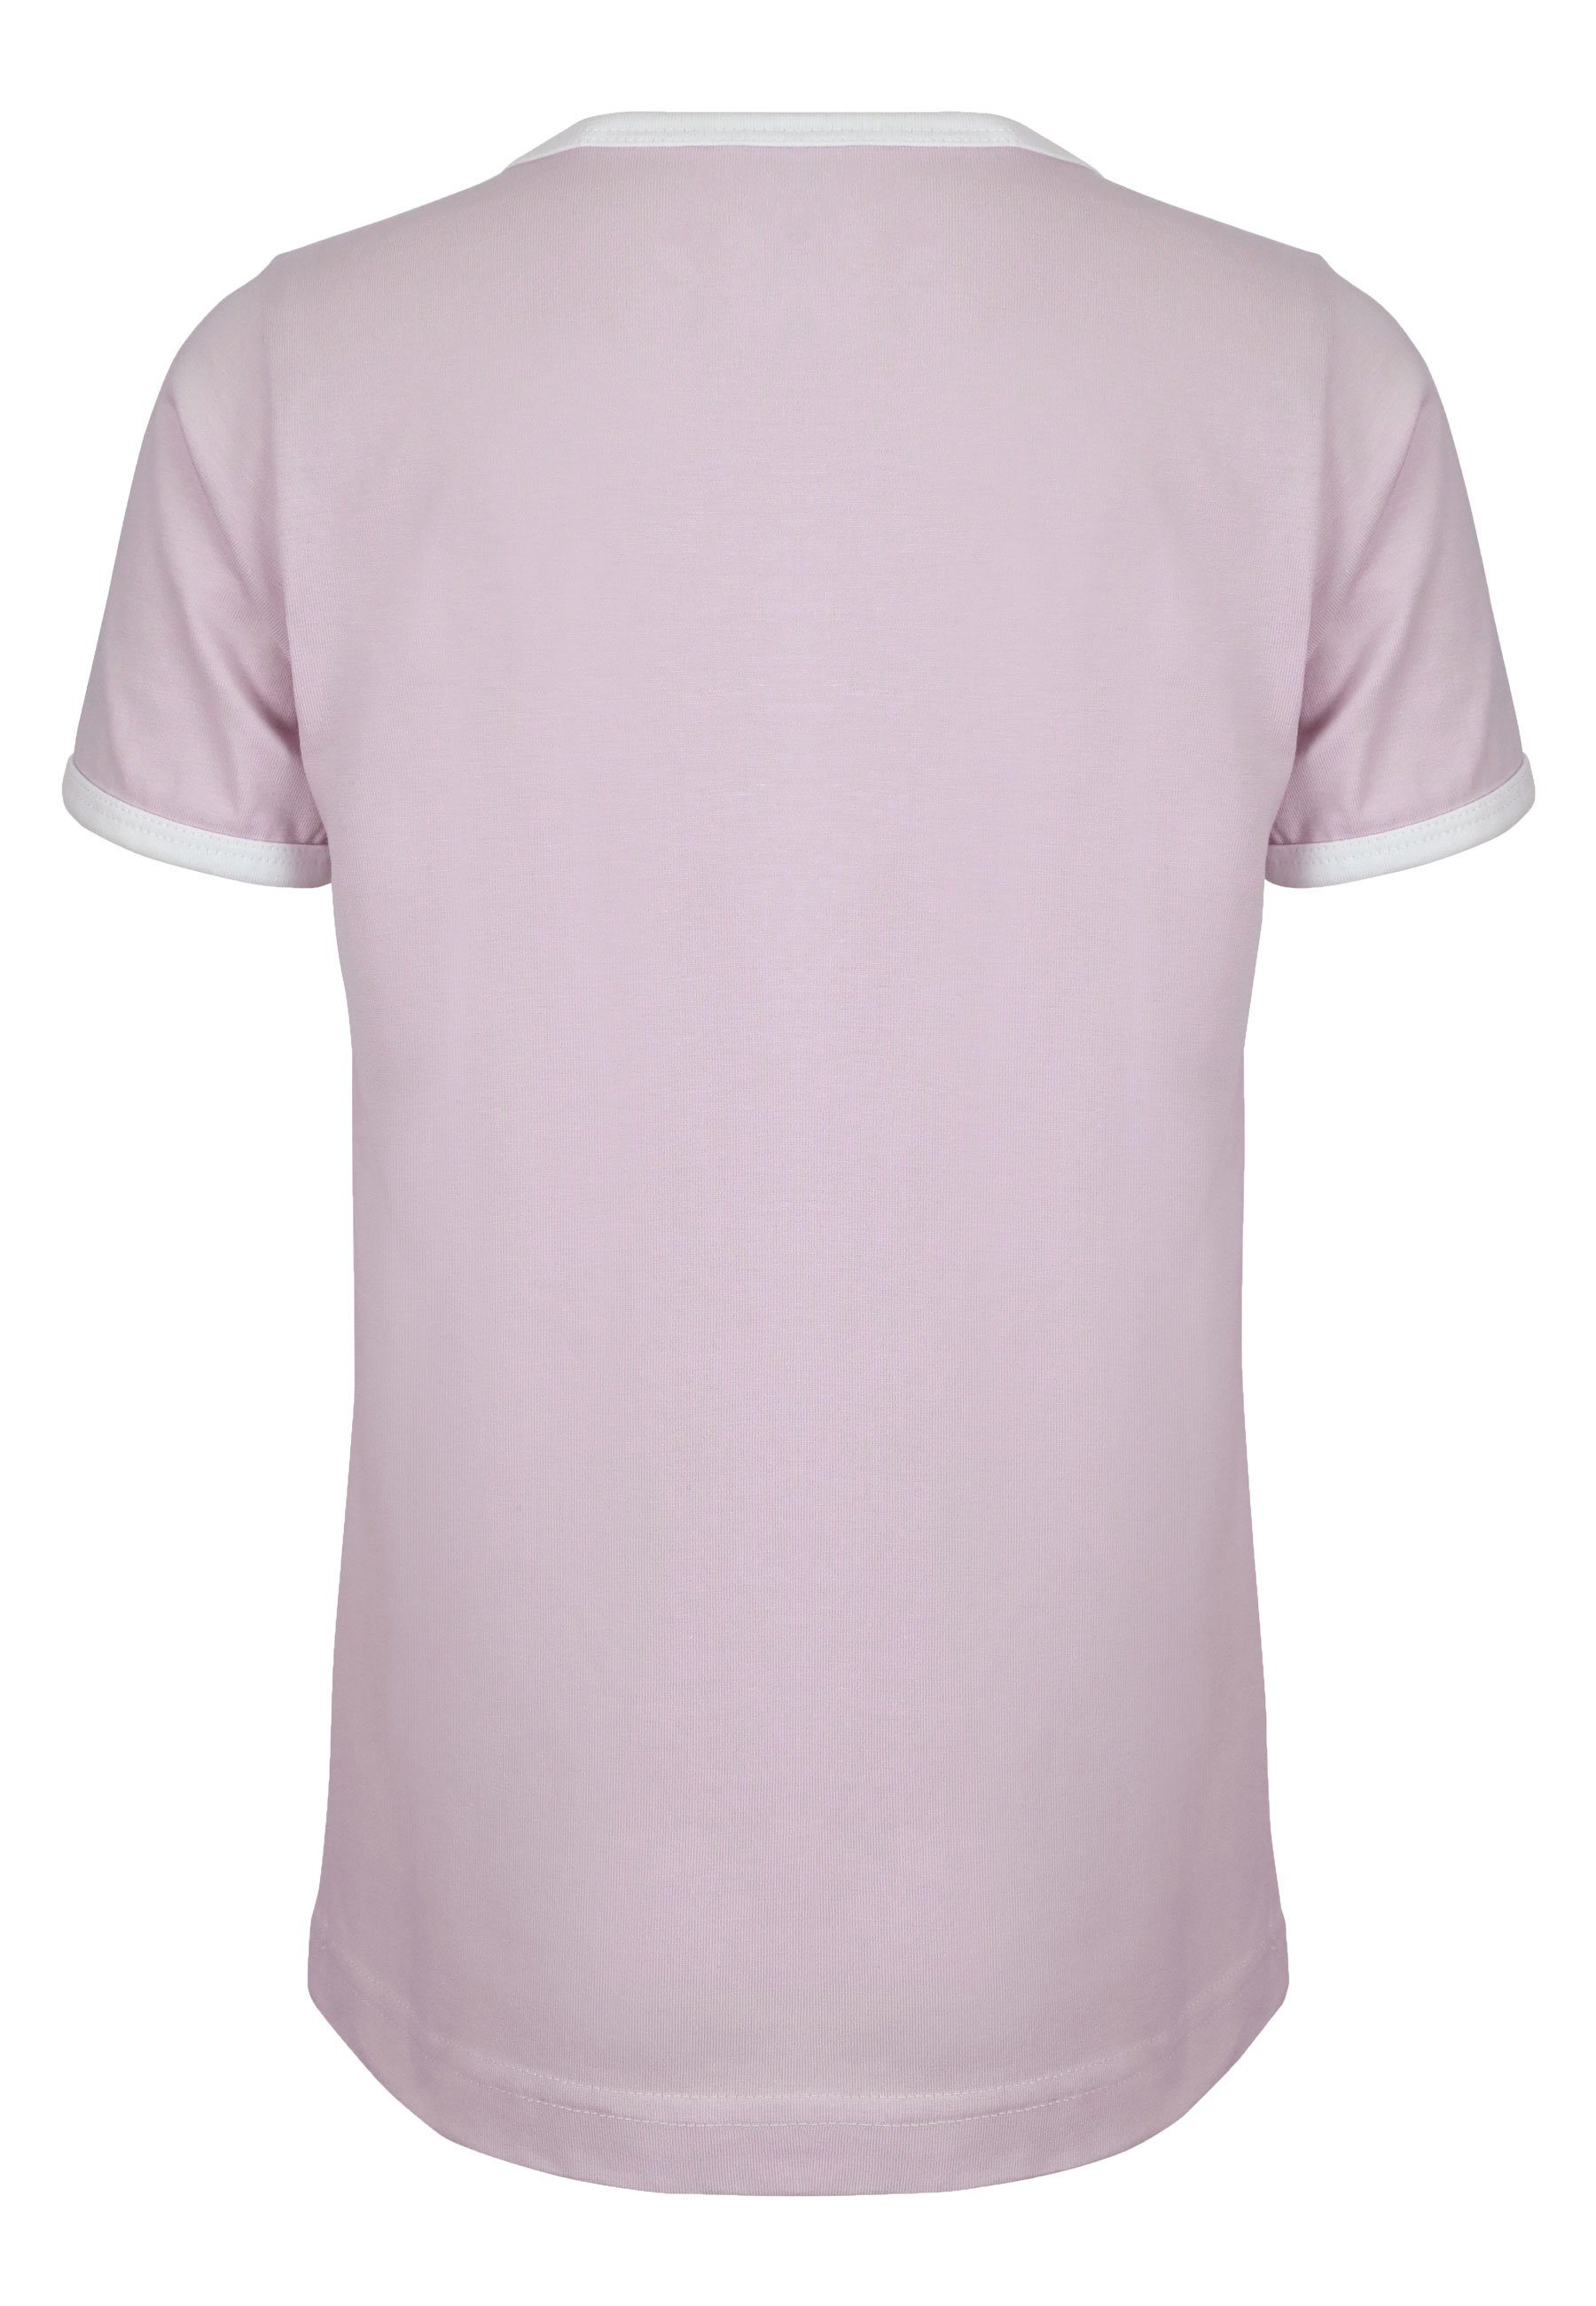 leicht Elkline Strand T-Shirt lavender tailliert Zum Print Brust Fahrrad